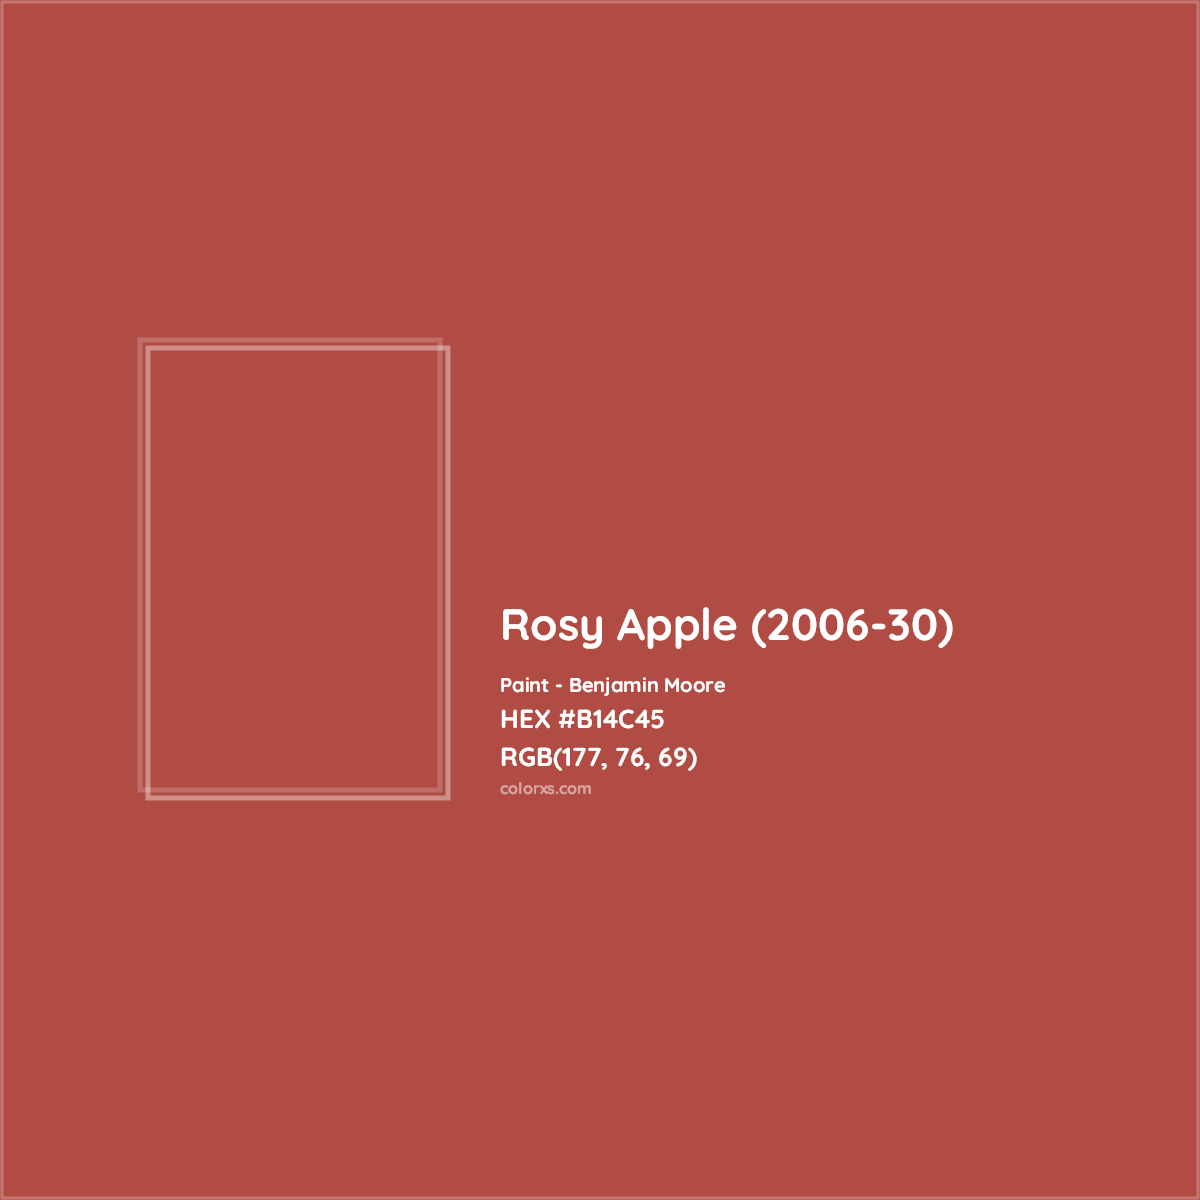 HEX #B14C45 Rosy Apple (2006-30) Paint Benjamin Moore - Color Code